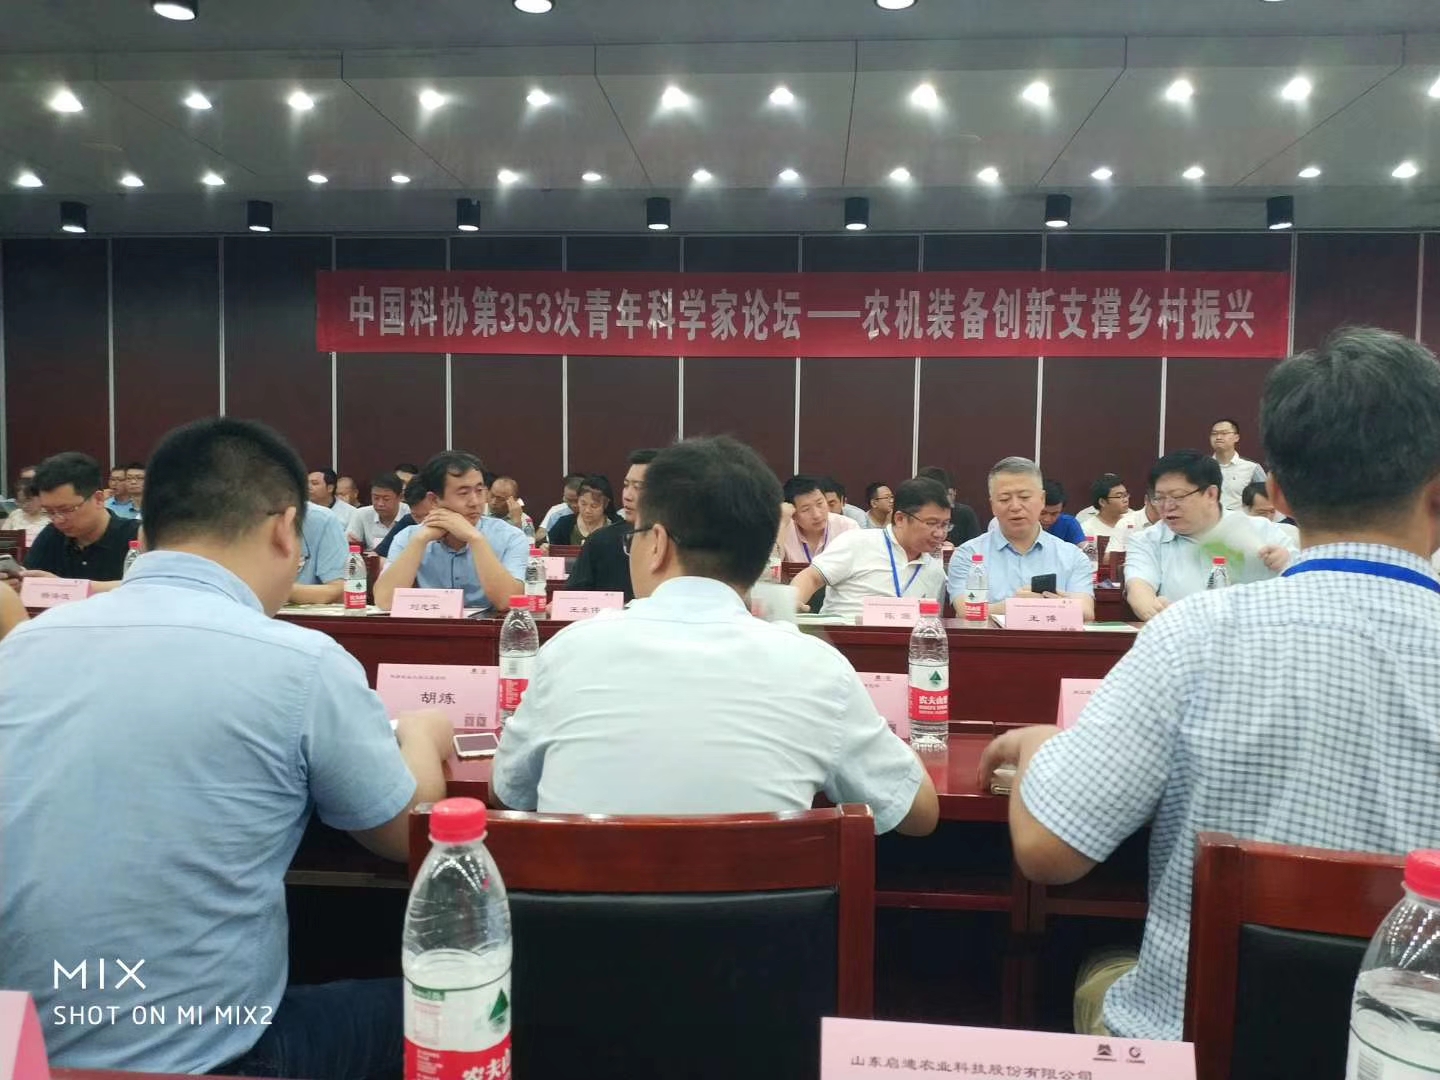 中国科学技术协会第353次青年科学家论坛“农机装备创新支撑乡村振兴”在京召开